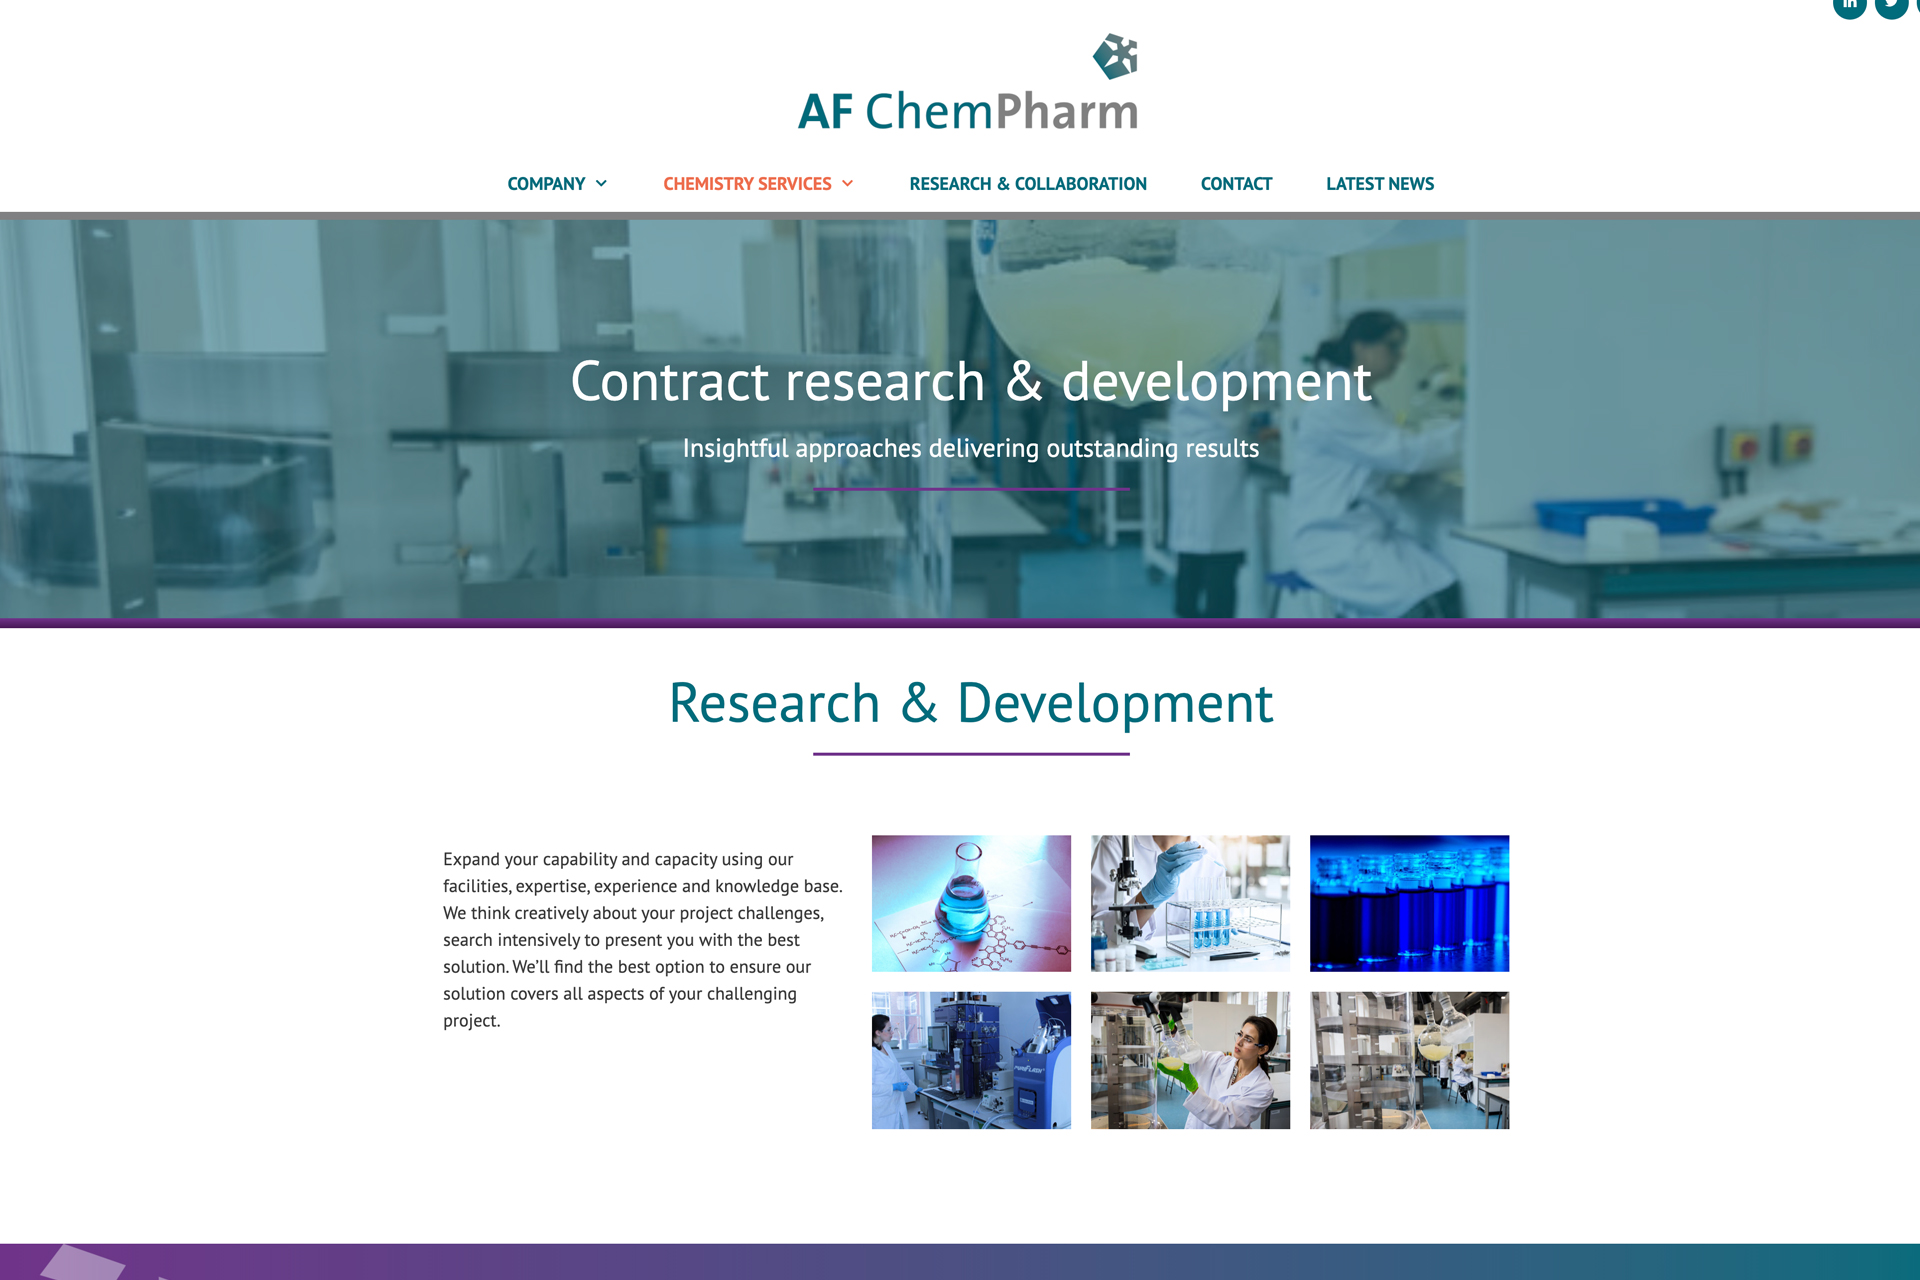 AF-ChemPharm-case-study-sml-image-3